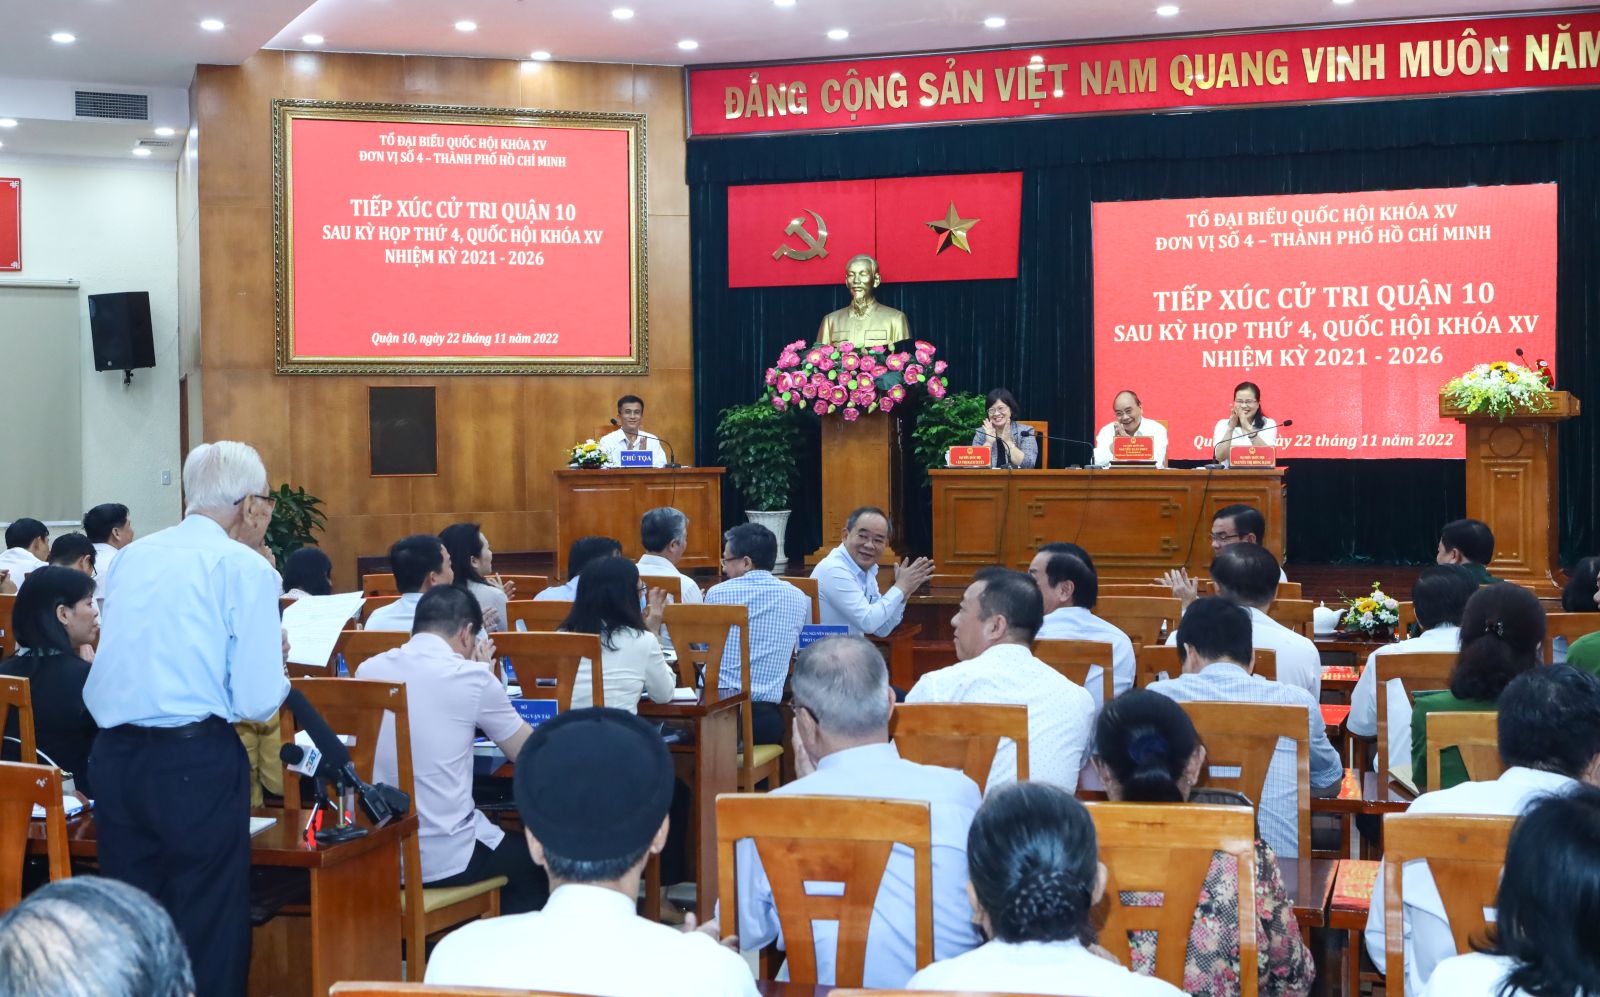 Chủ tịch nước Nguyễn Xuân Phúc tiếp xúc cử tri Quận 10, thành phố Hồ Chí Minh - Ảnh 5.